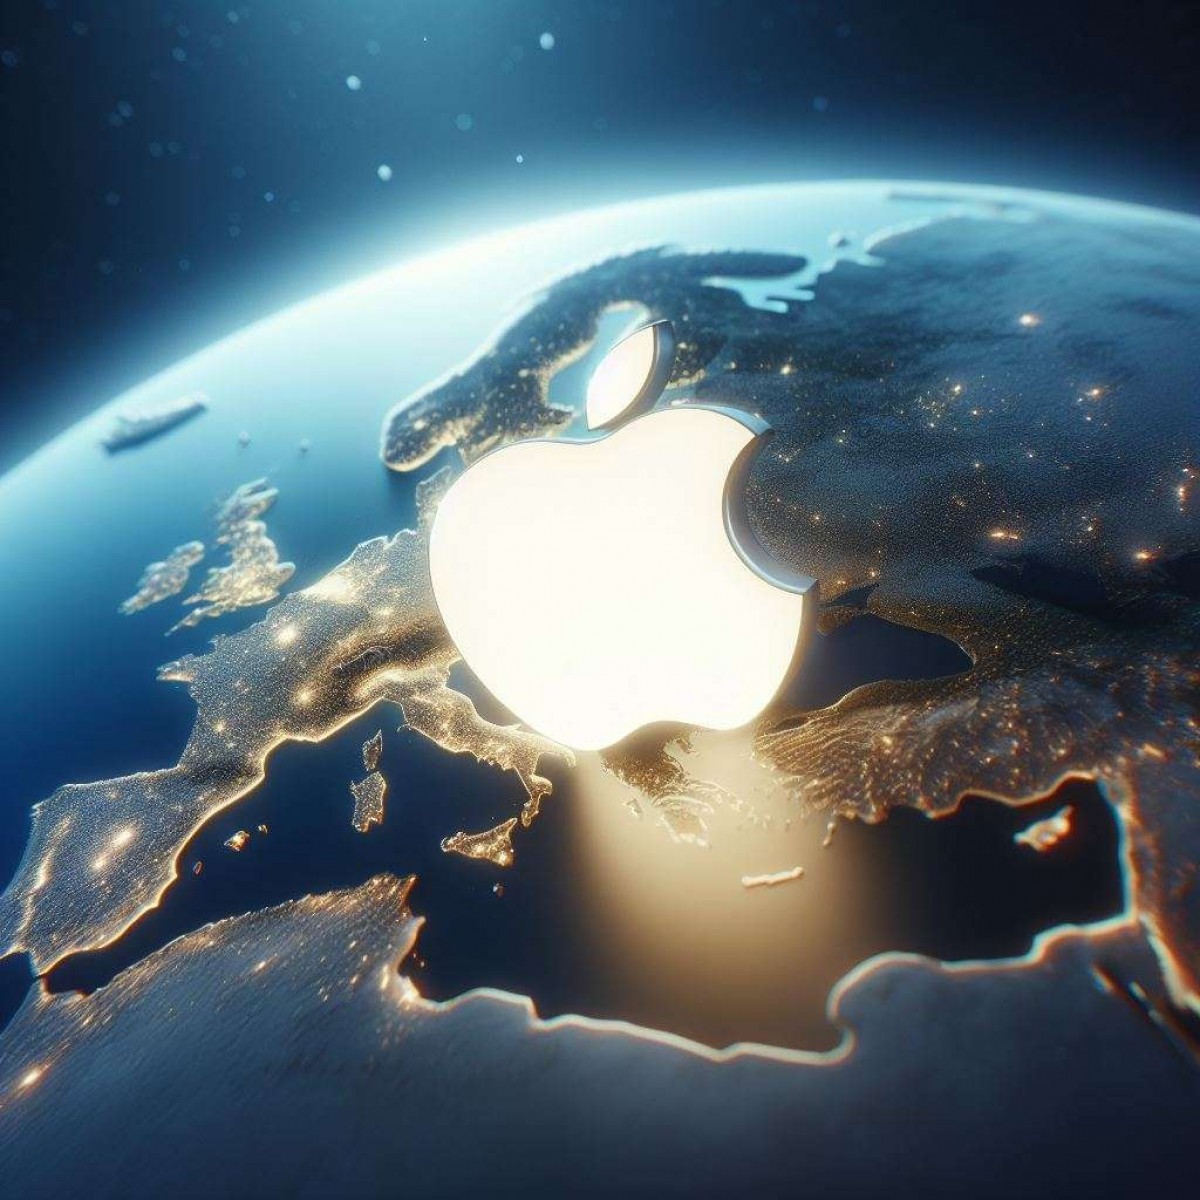 تقوم Apple بإزالة الدعم لتطبيقات الويب التقدمية في الاتحاد الأوروبي